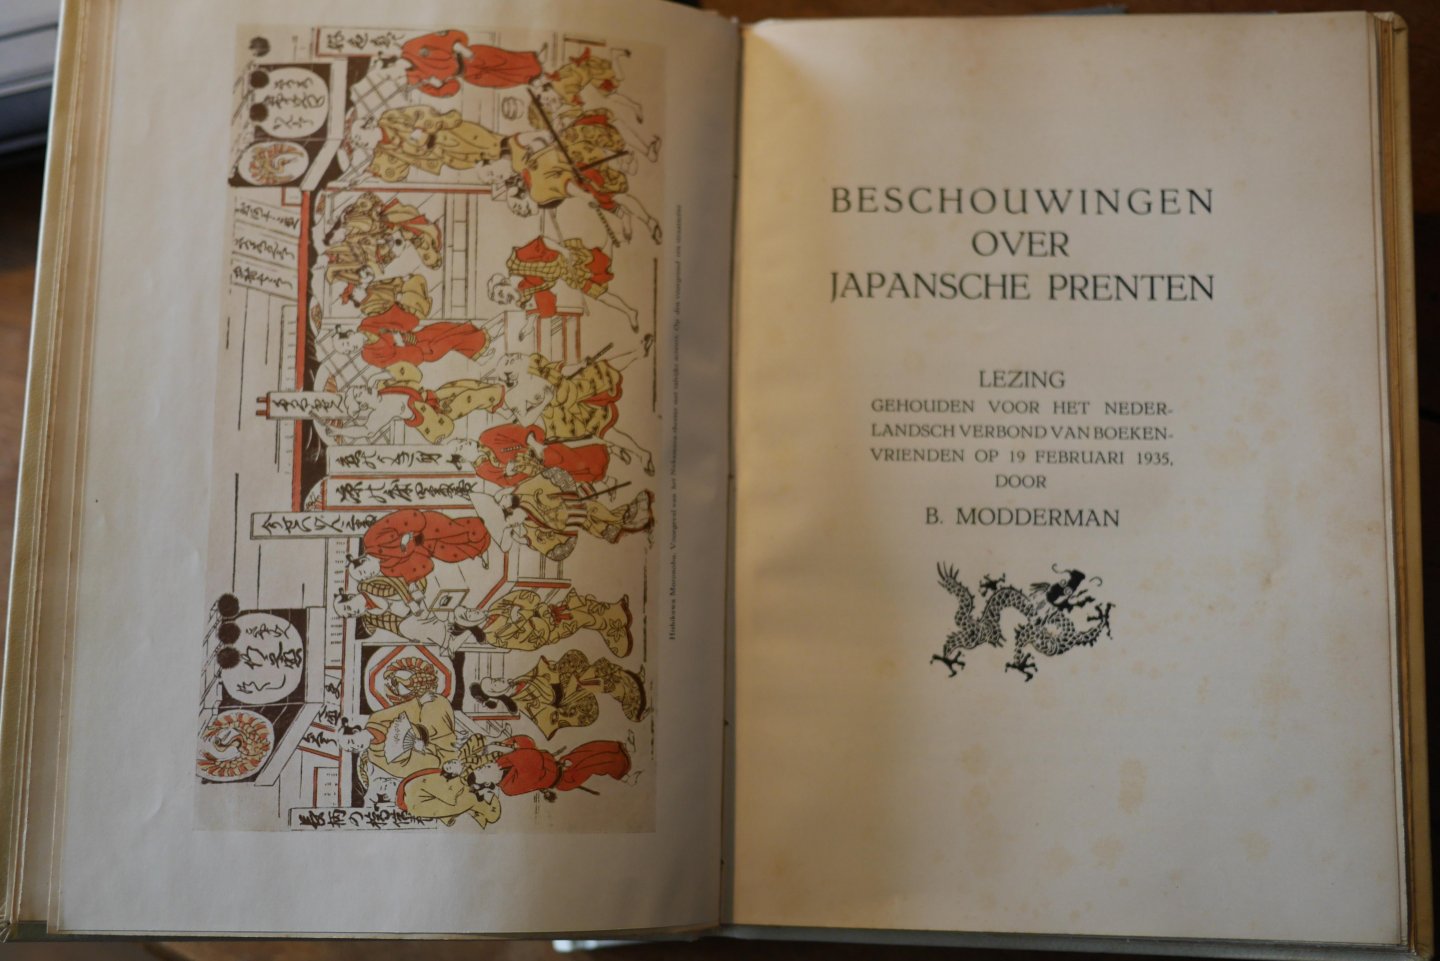 Berend Modderman - Beschouwingen over Japansche Prenten, Lezing gehouden voor het Nederlandsch Verbond van boekenvrienden op 19 Februari 1935.